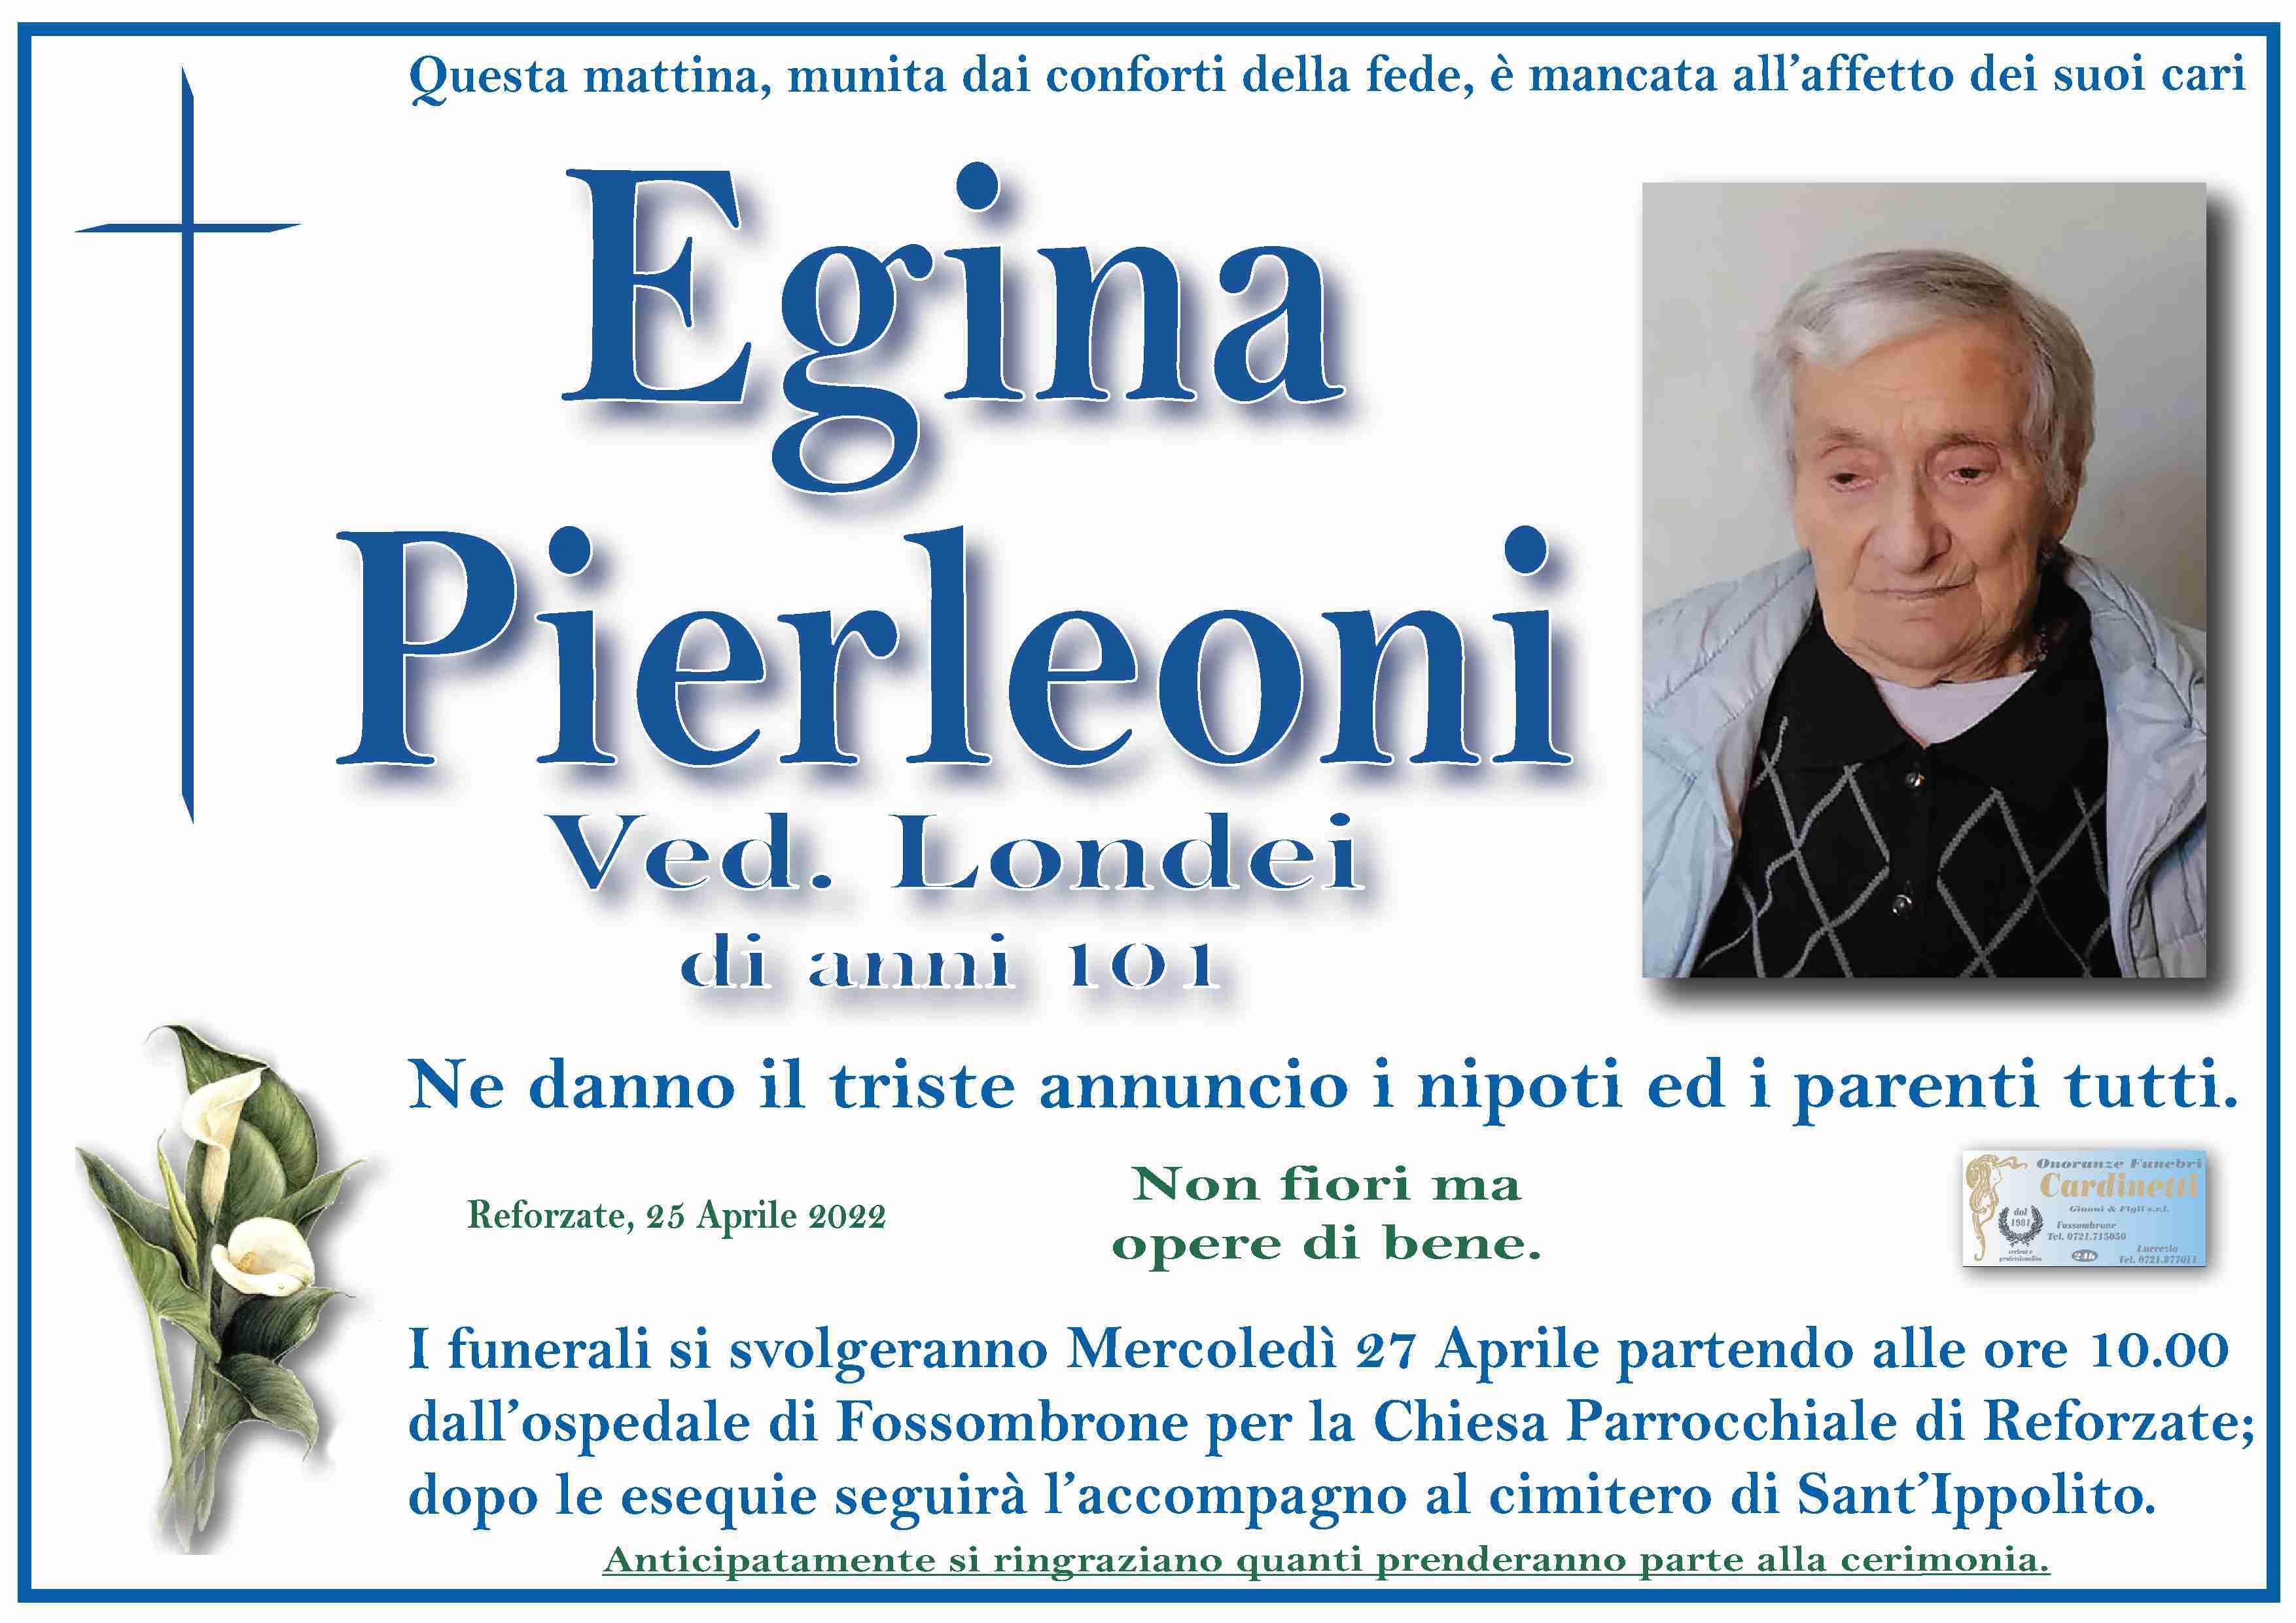 Egina Pierleoni